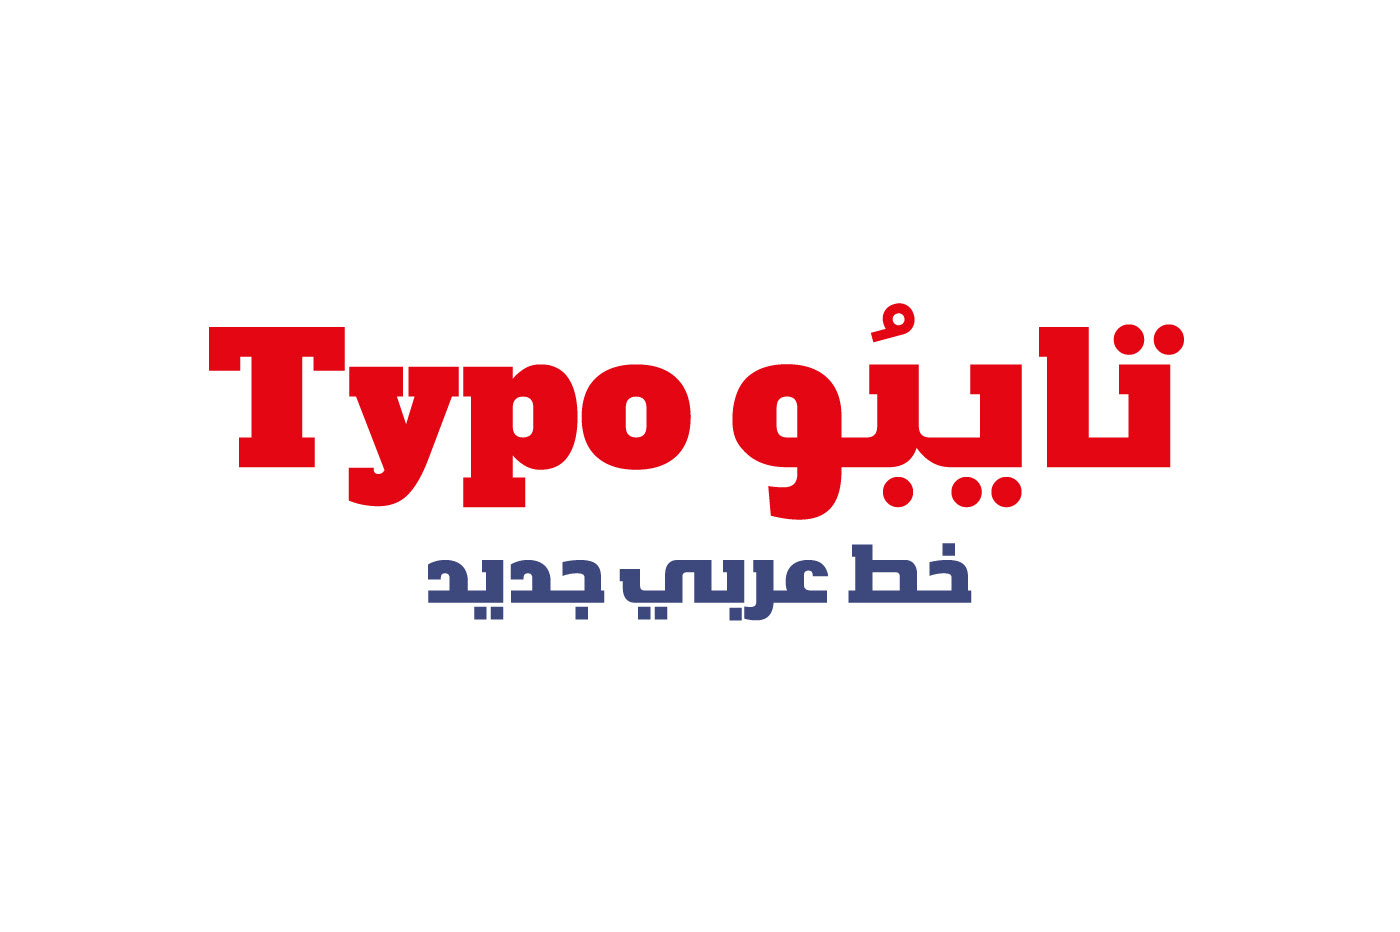 خط عربي مجاني ليبيا عربي خط فنت فن تايب